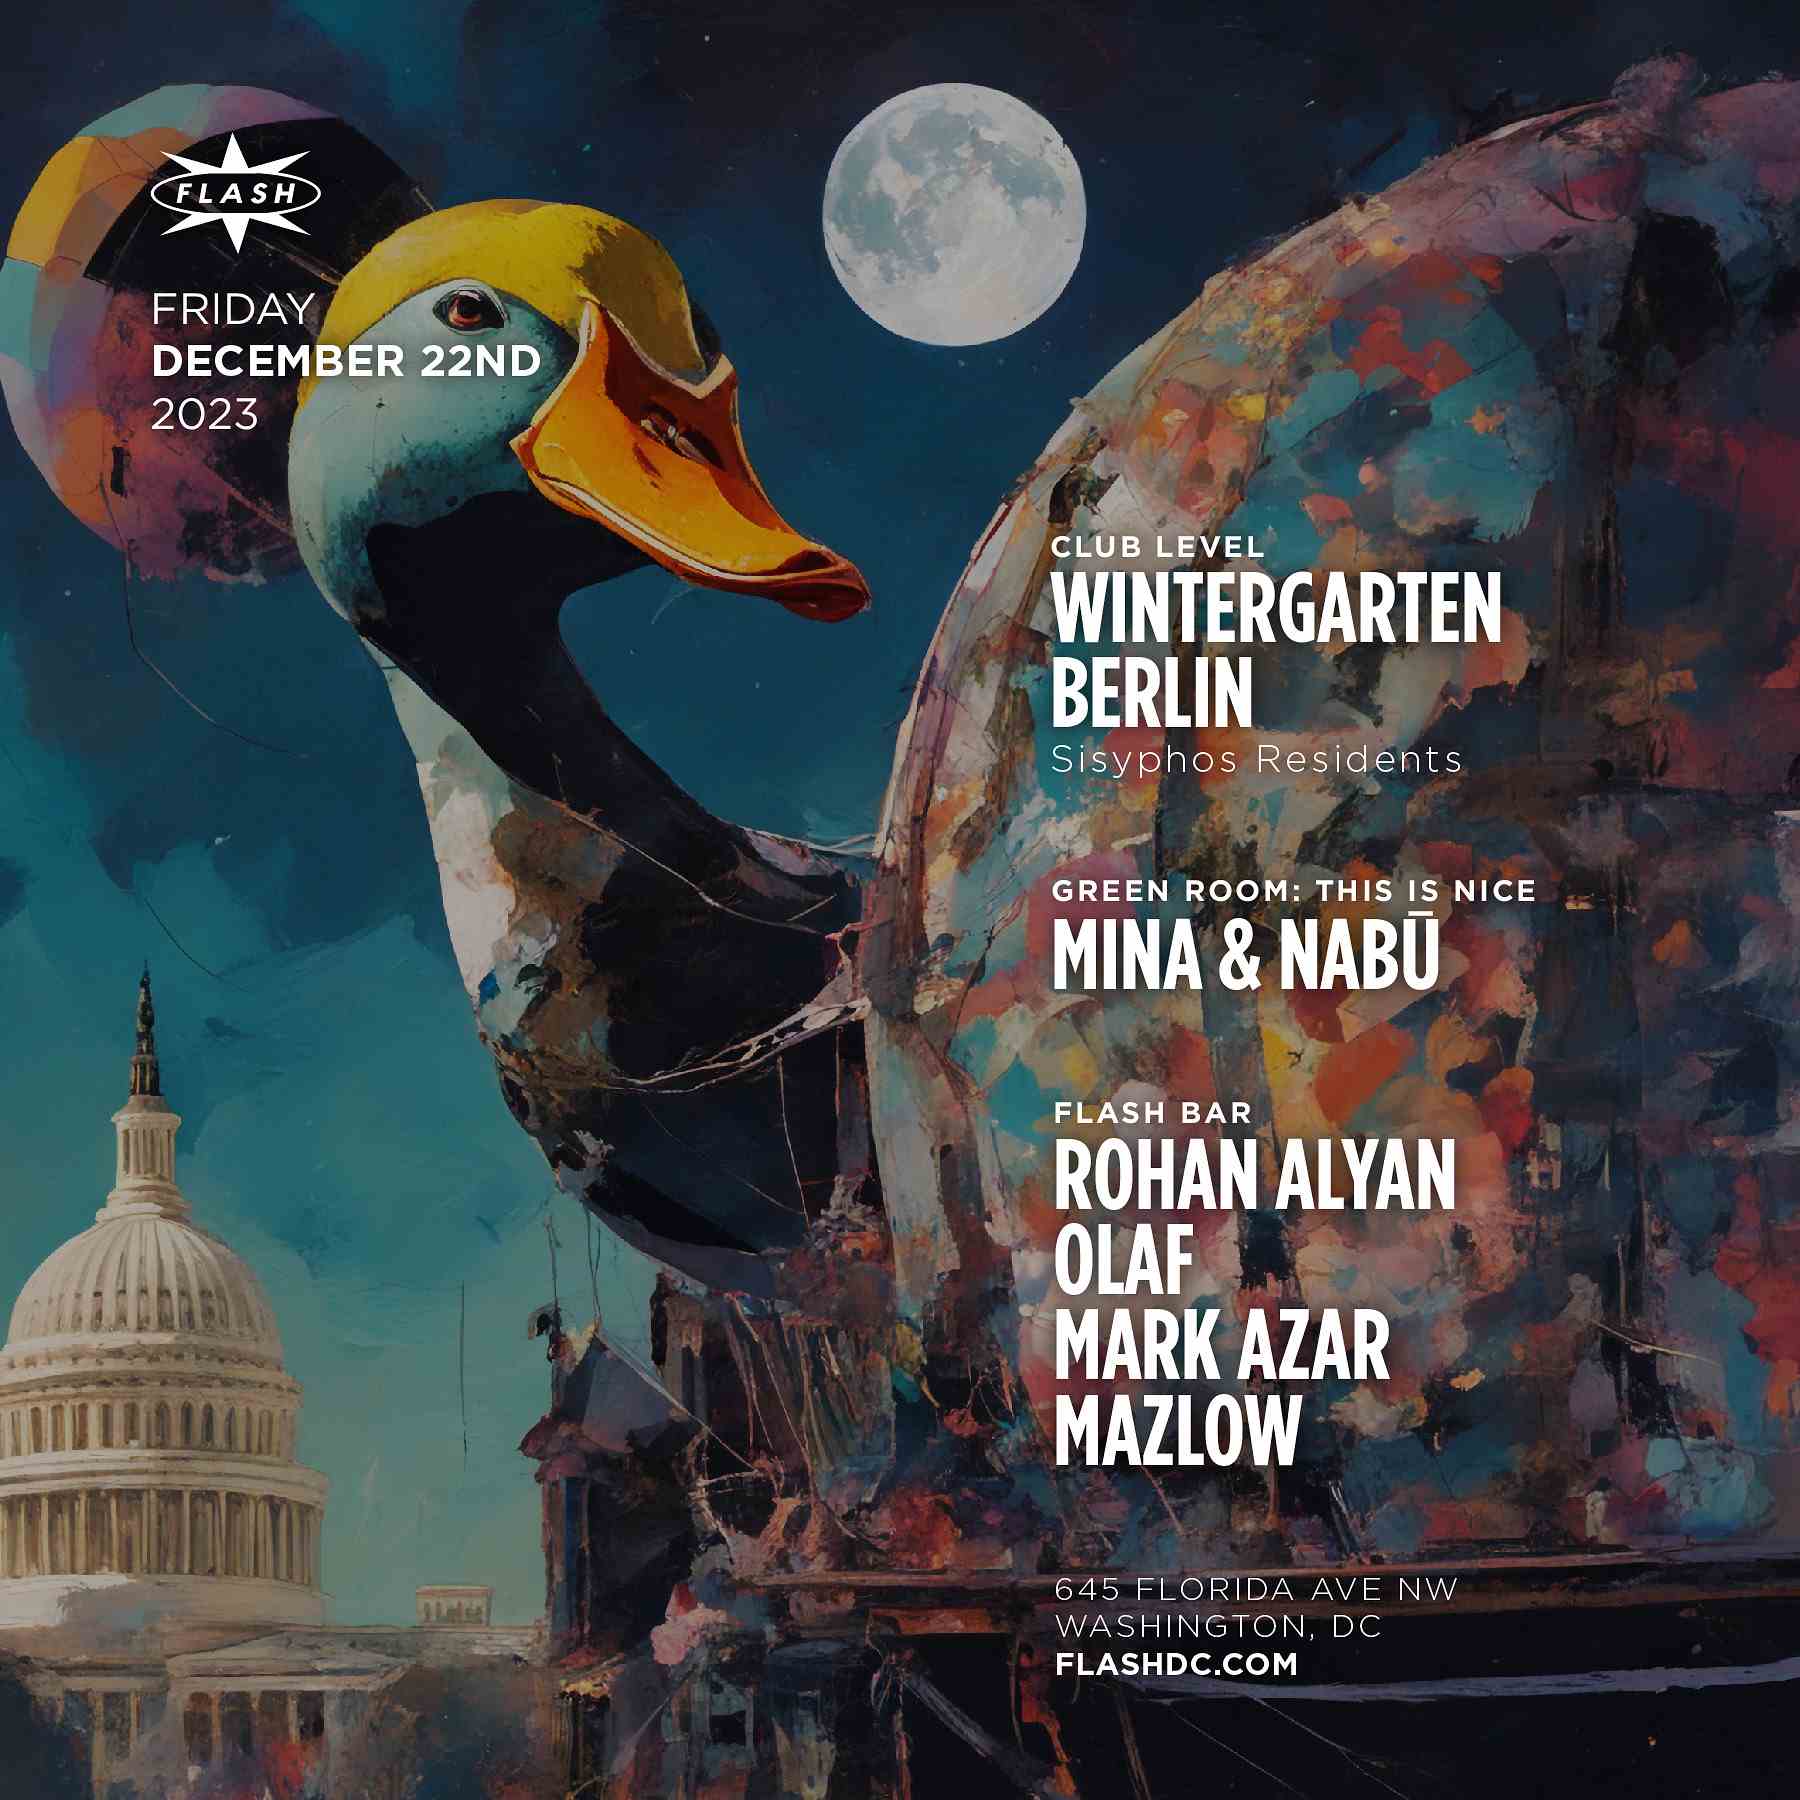 Wintergarten Berlin event flyer